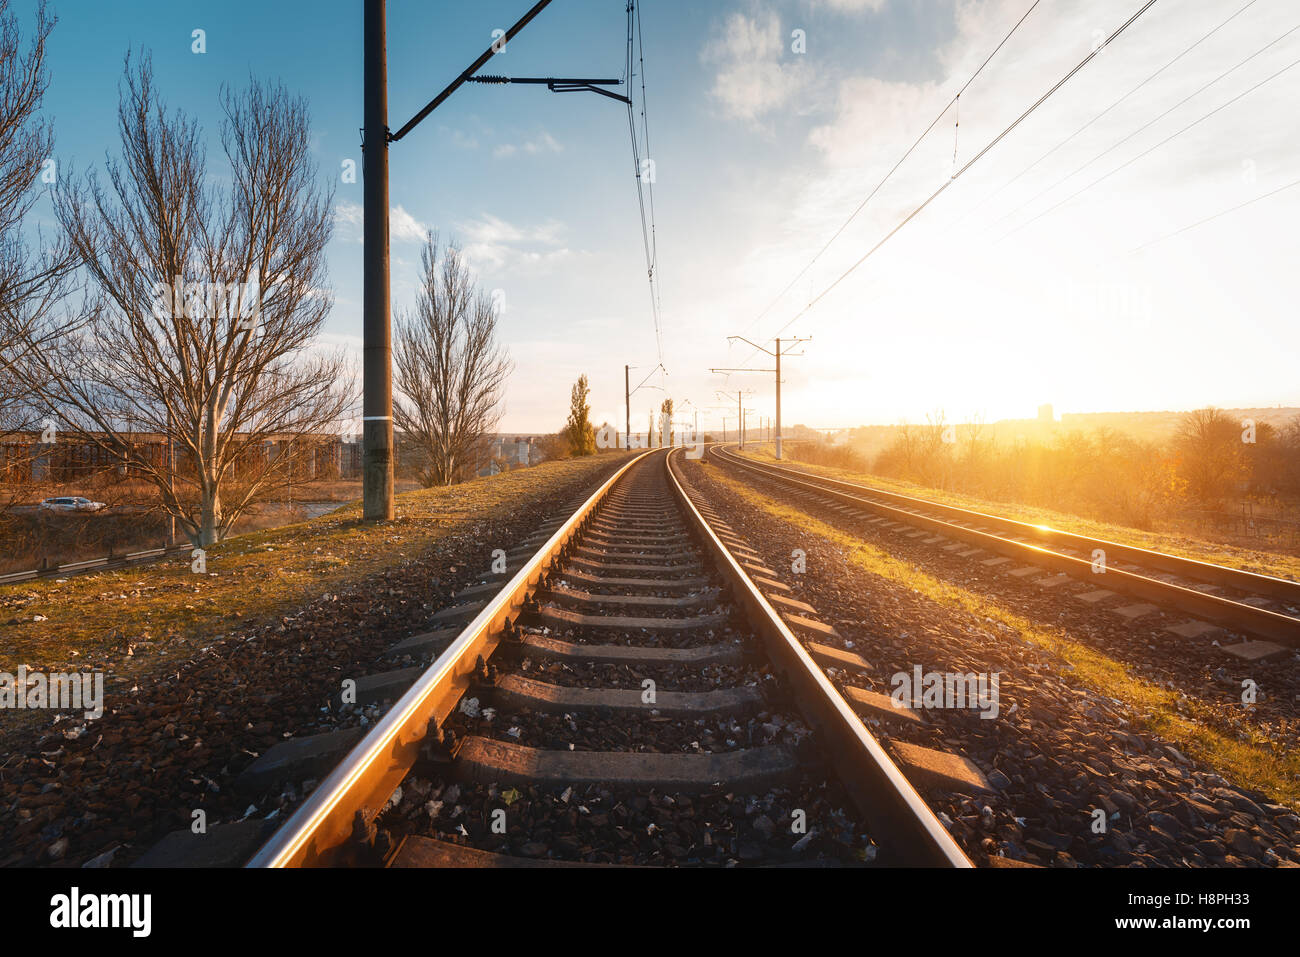 Eisenbahn gegen schönen Himmel bei Sonnenuntergang. Industrielandschaft mit Bahnhof, bunten blauen Himmel, Bäume und Rasen, Sonne Stockfoto